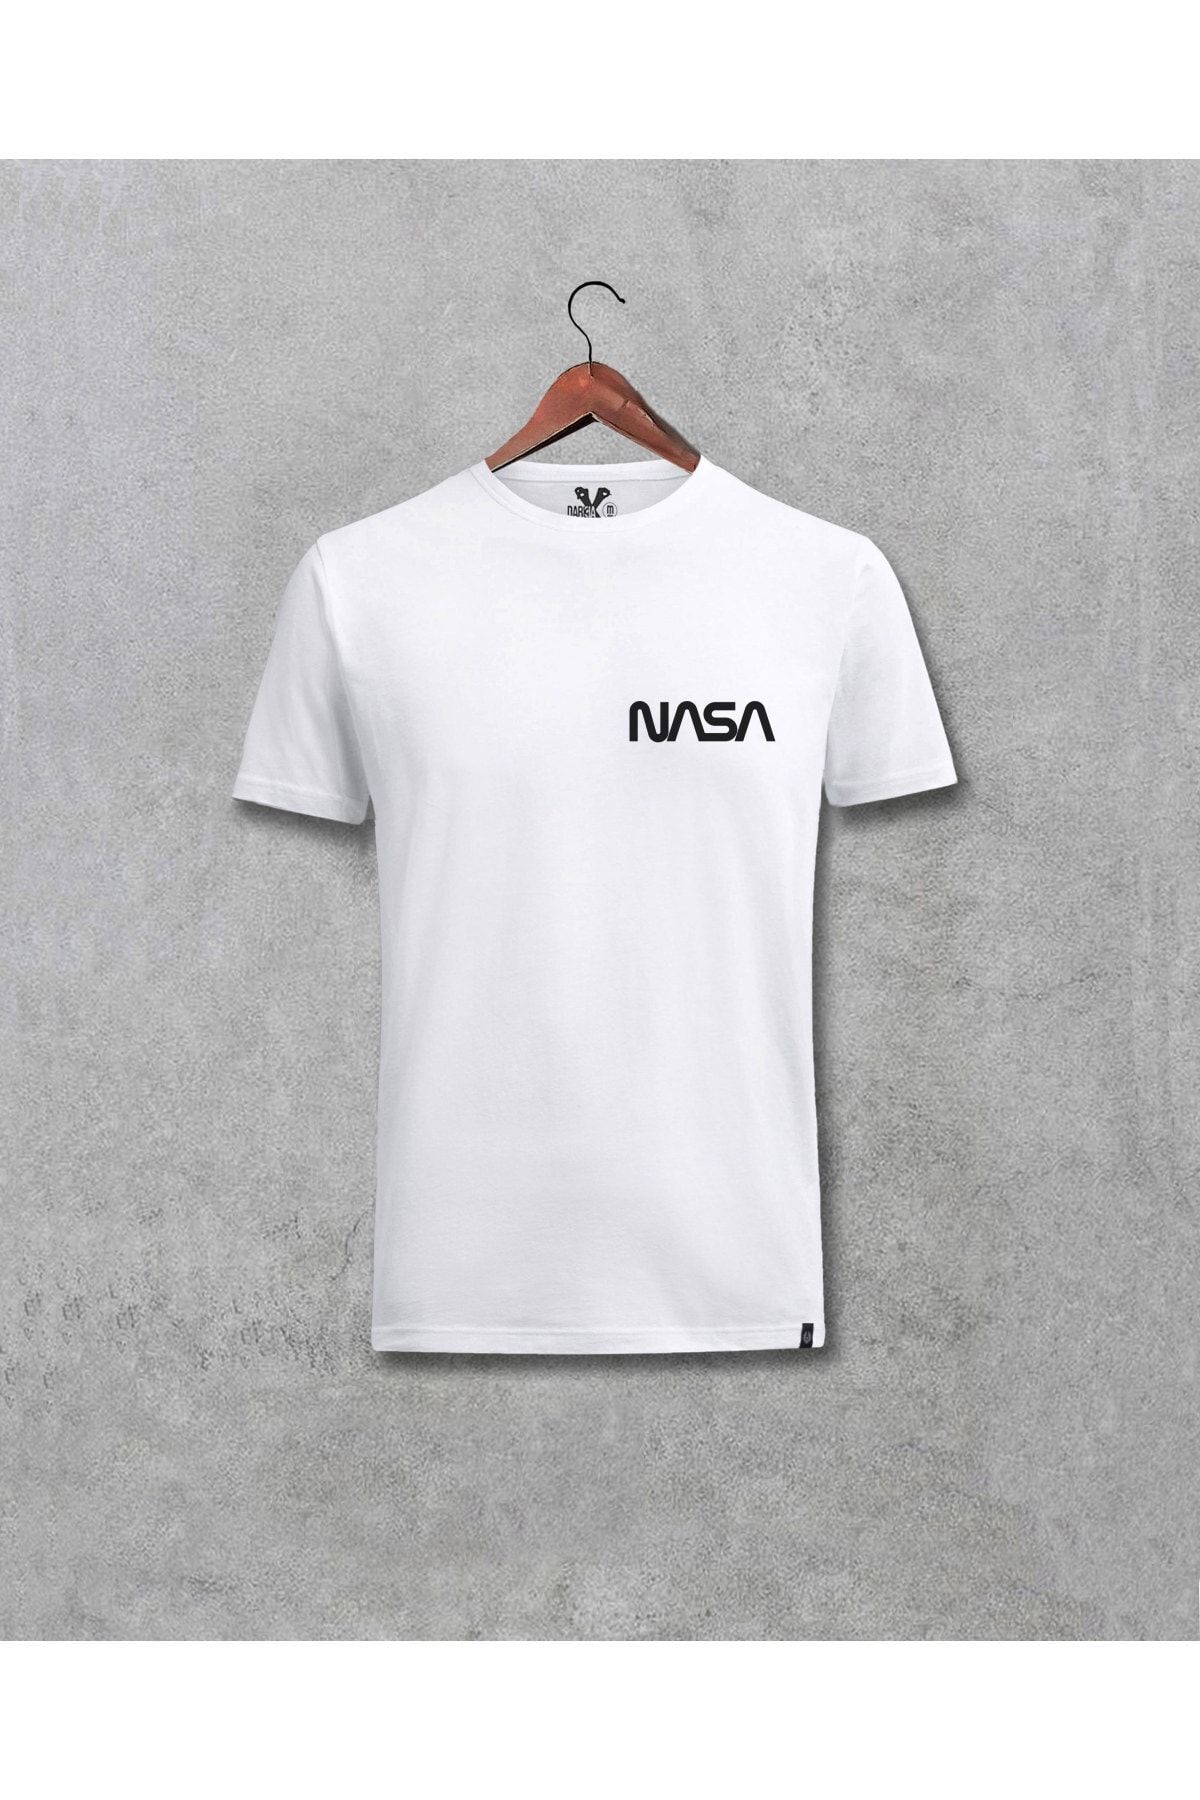 Darkia Unisex Siyah Nasa Logo Göğüs Baskılı Yazılı Tasarım T-shirt